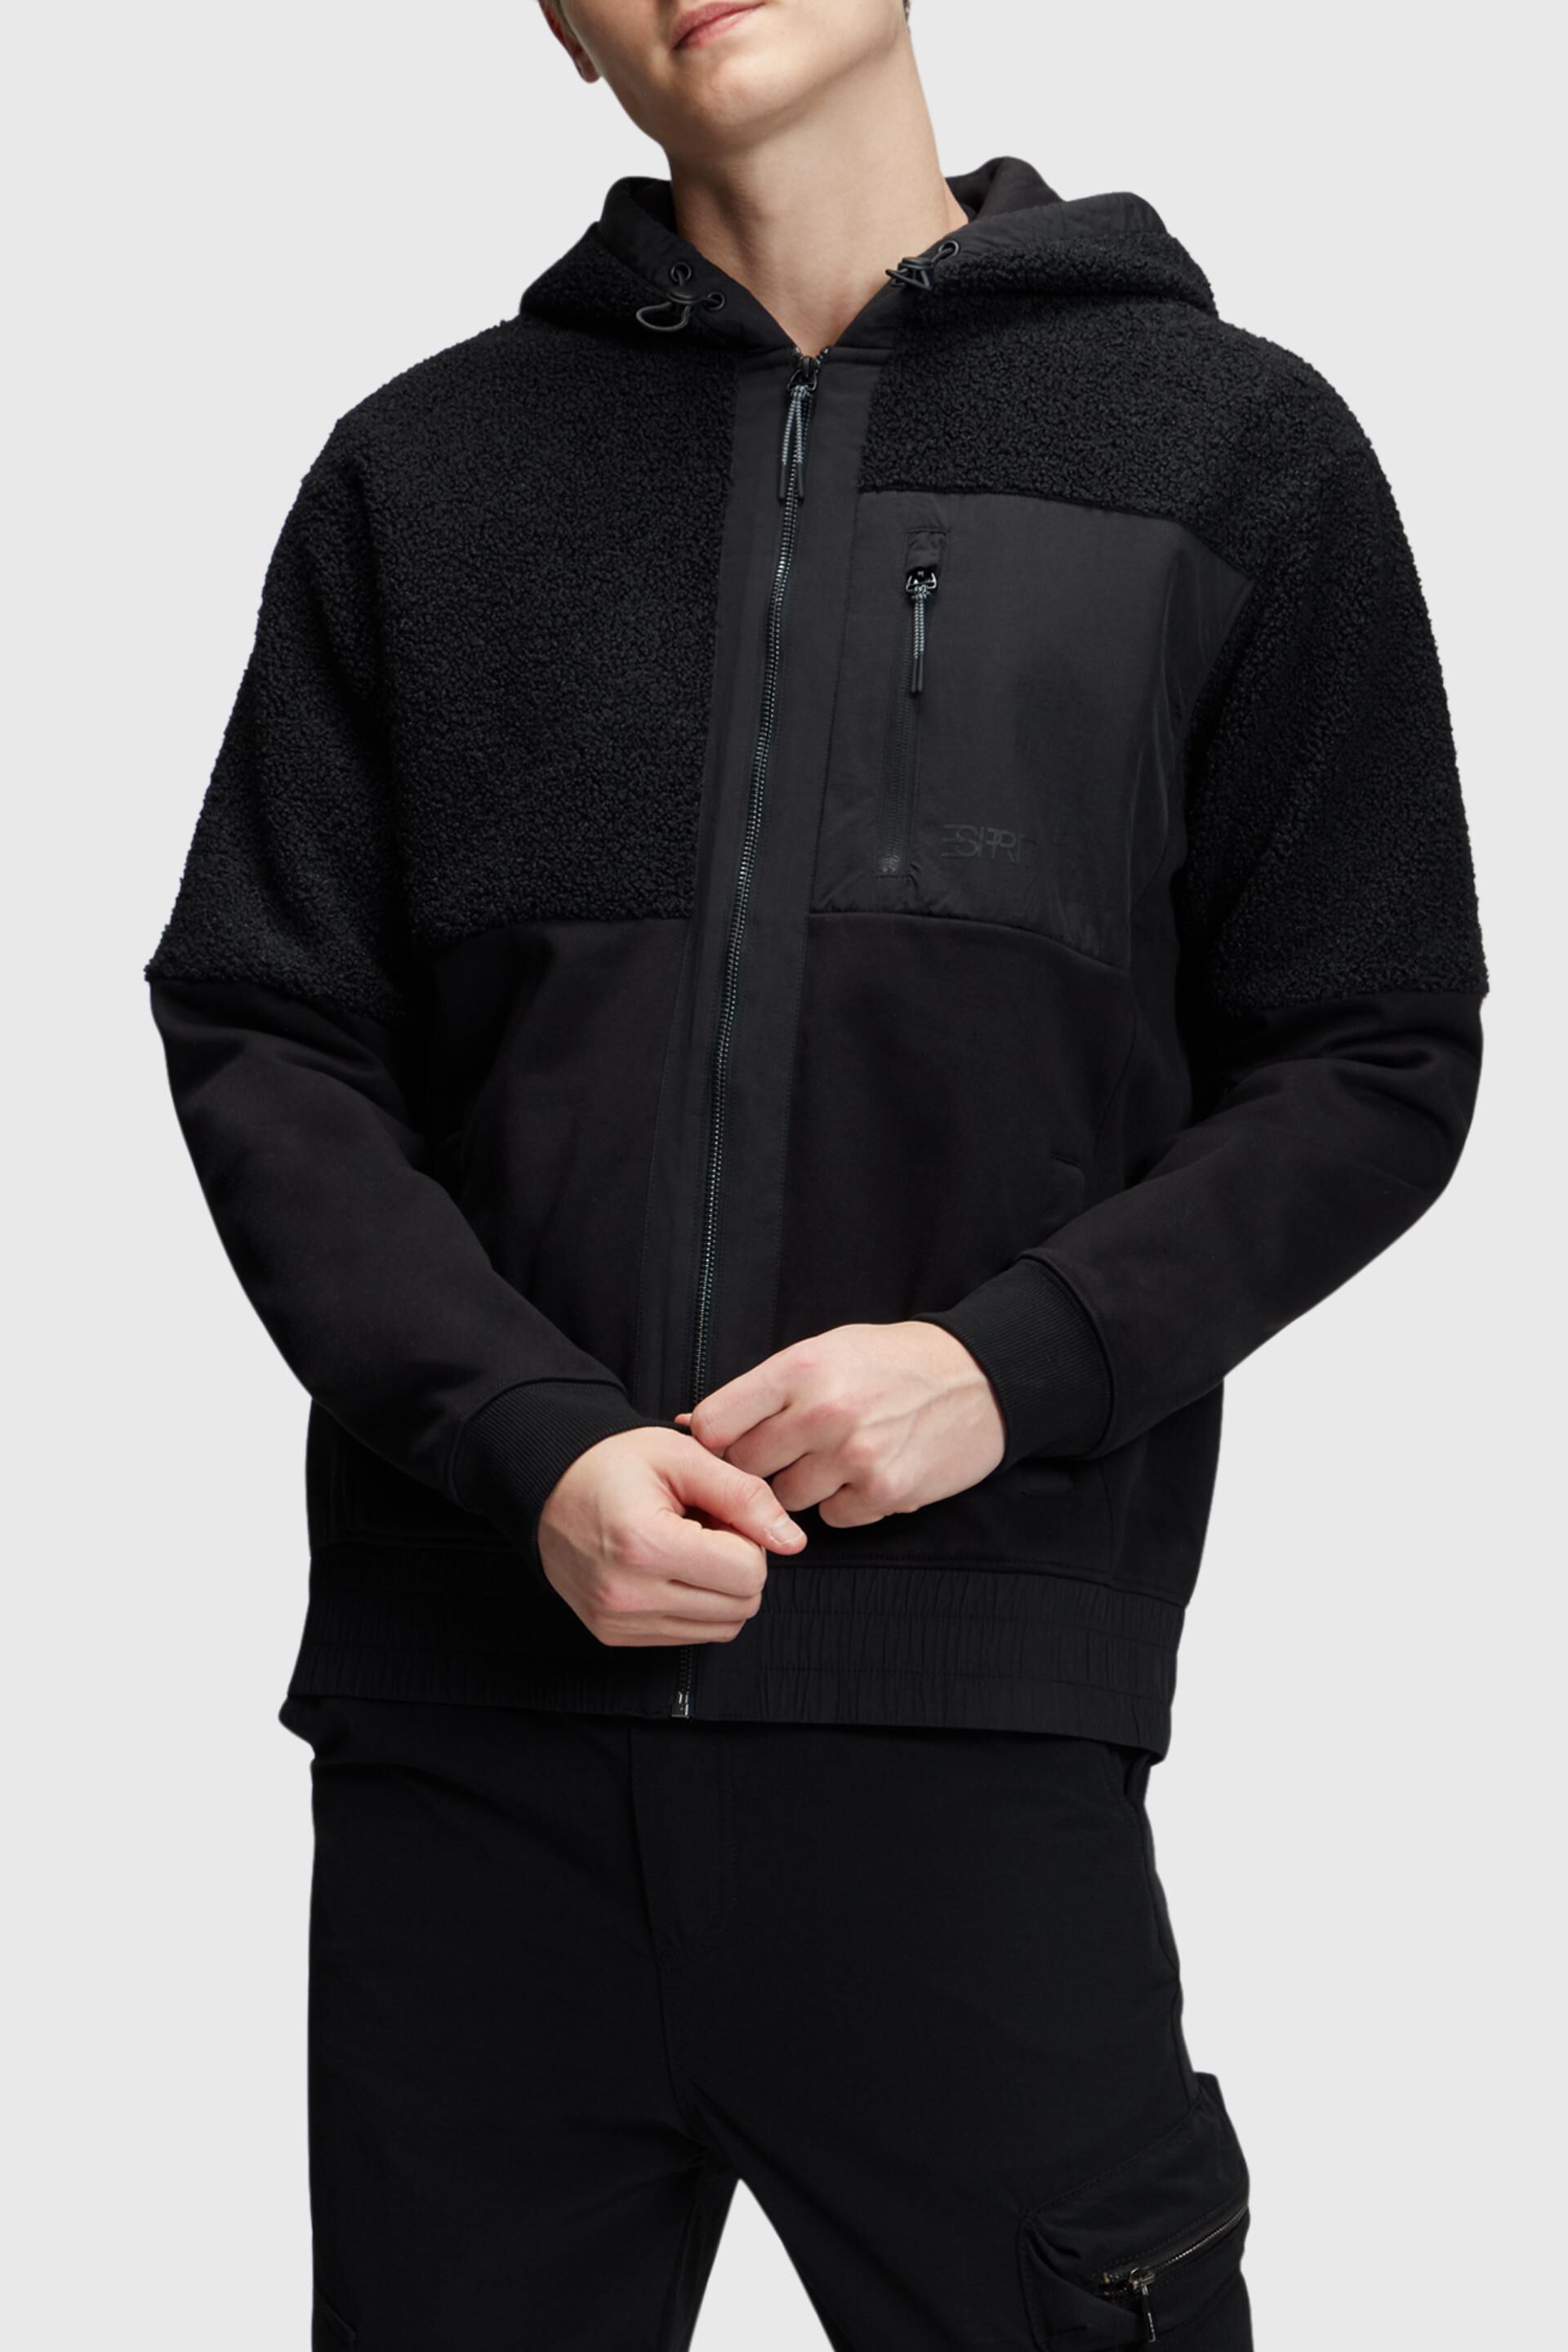 Esprit Mixed zip-up hoodie material